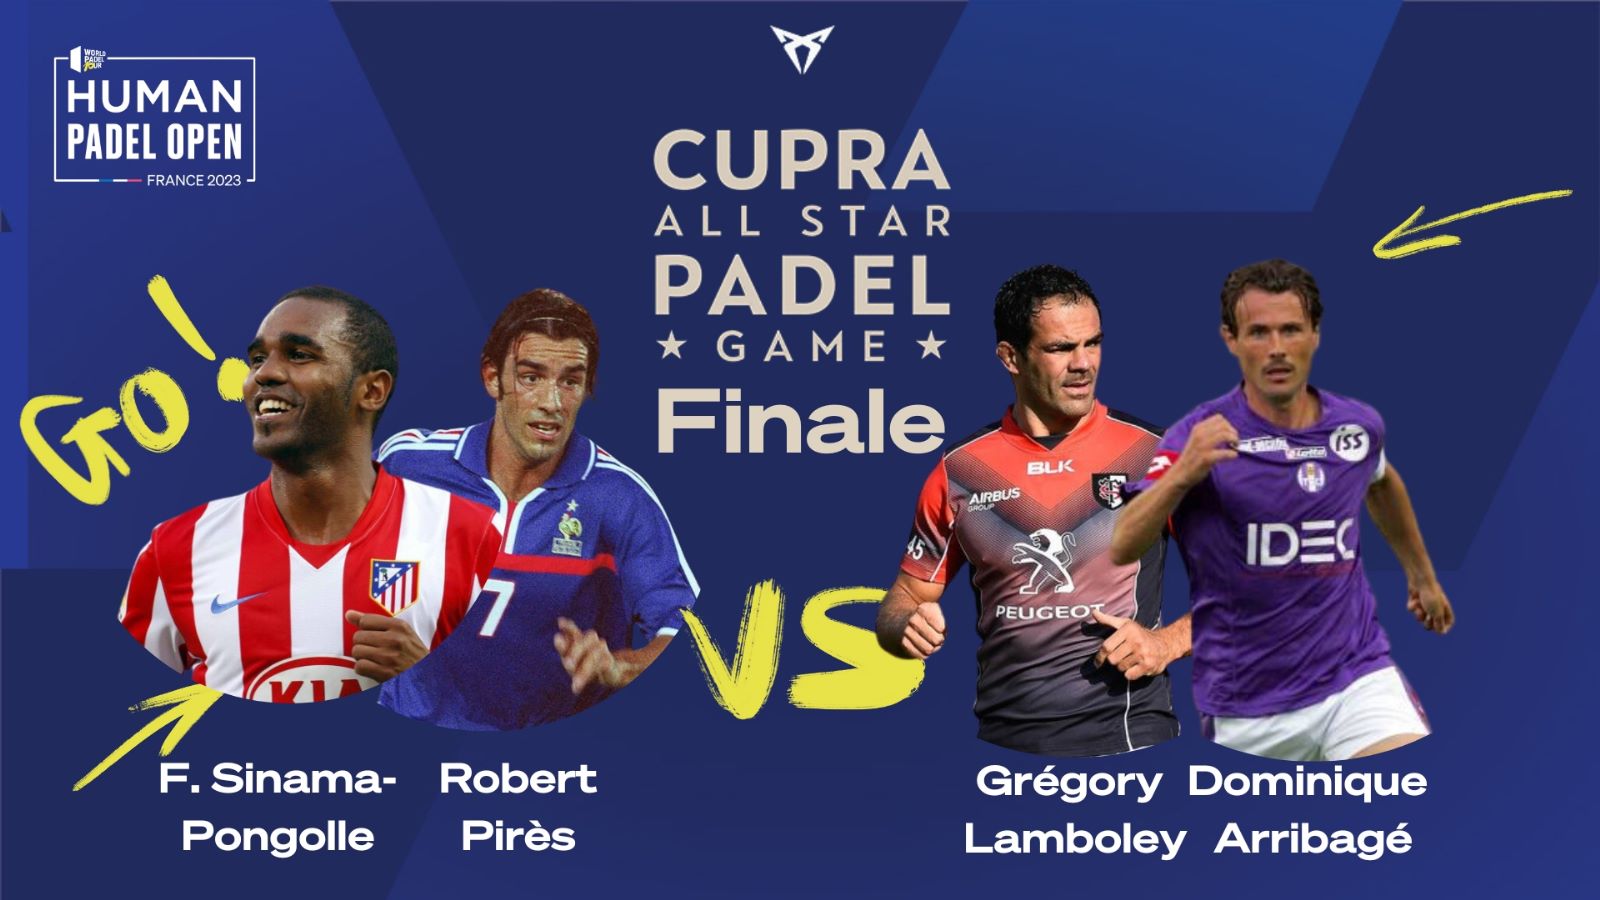 Cupra All Star Padel Gioco – Segui la finale!